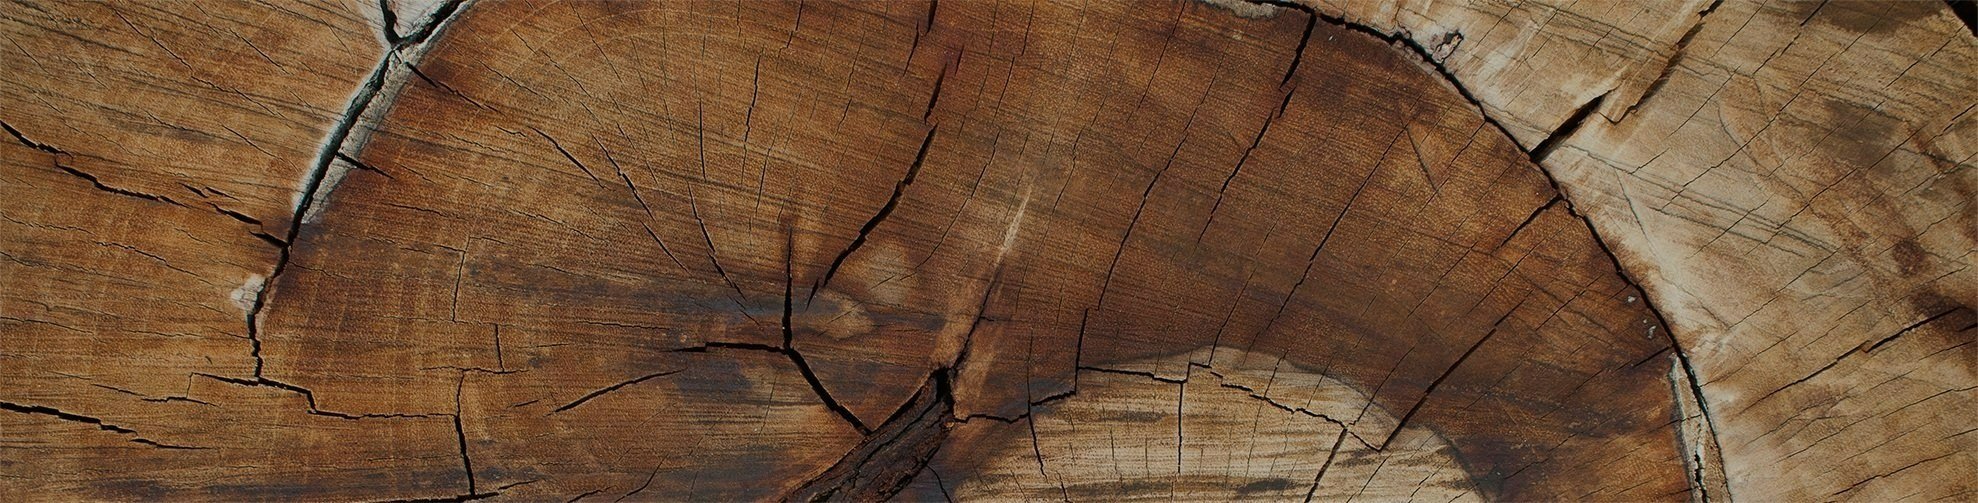   “Puu kasvaa 120 vuotta ennen kuin se sahataan lankuiksi ja laudoiksi; tällöin on tärkeää, ettei puutavaran kuivaus – viimeinen ja vaikein vaihe – vaaranna taloudellista tulosta.”    —Johnny Lindström, Setran tuotantopäällikkö, Malå, Ruotsi   